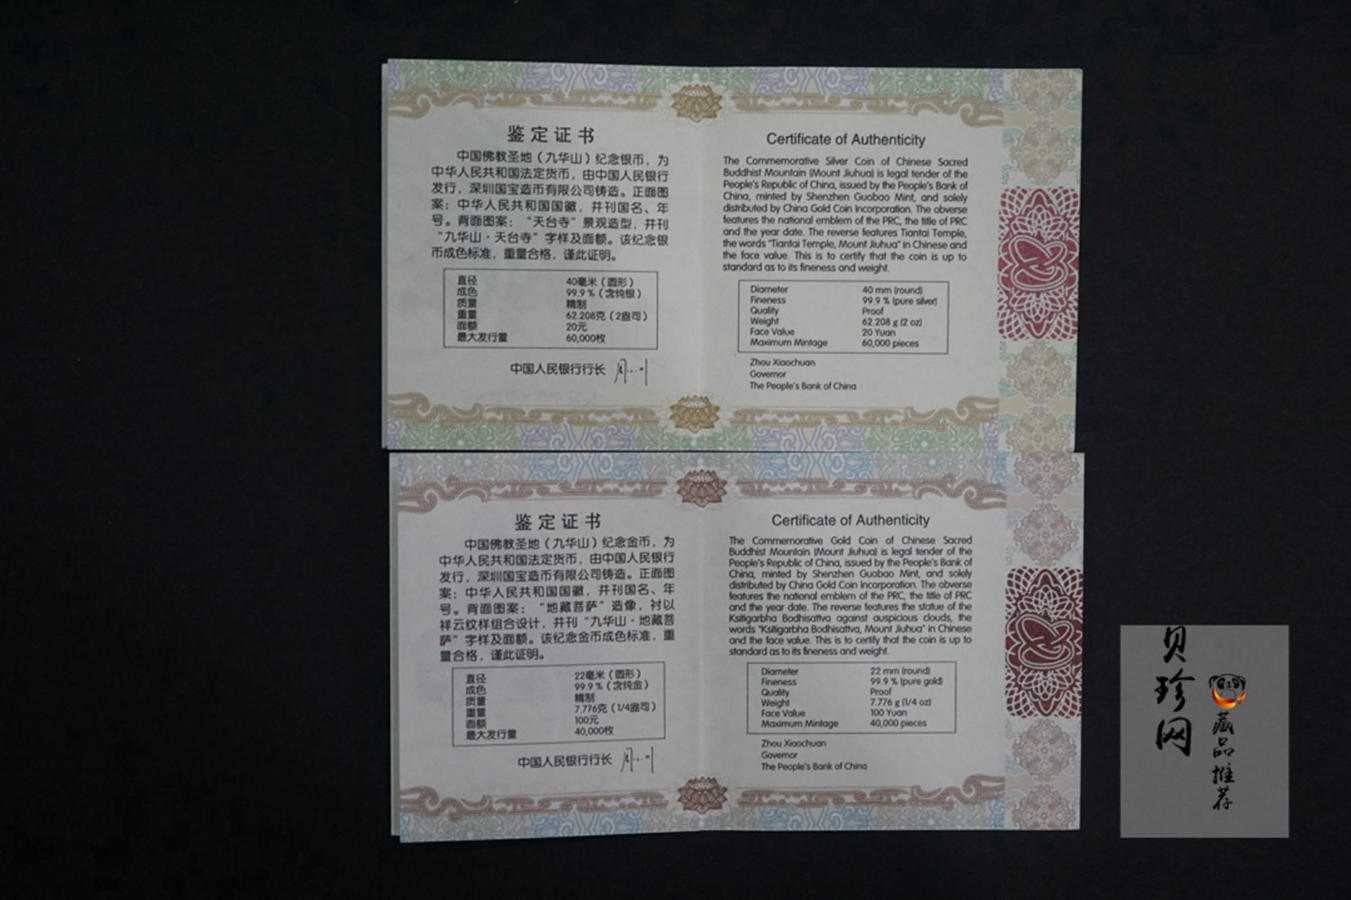 【159070】2015中国佛教圣地（九华山）精制金银币2枚一套